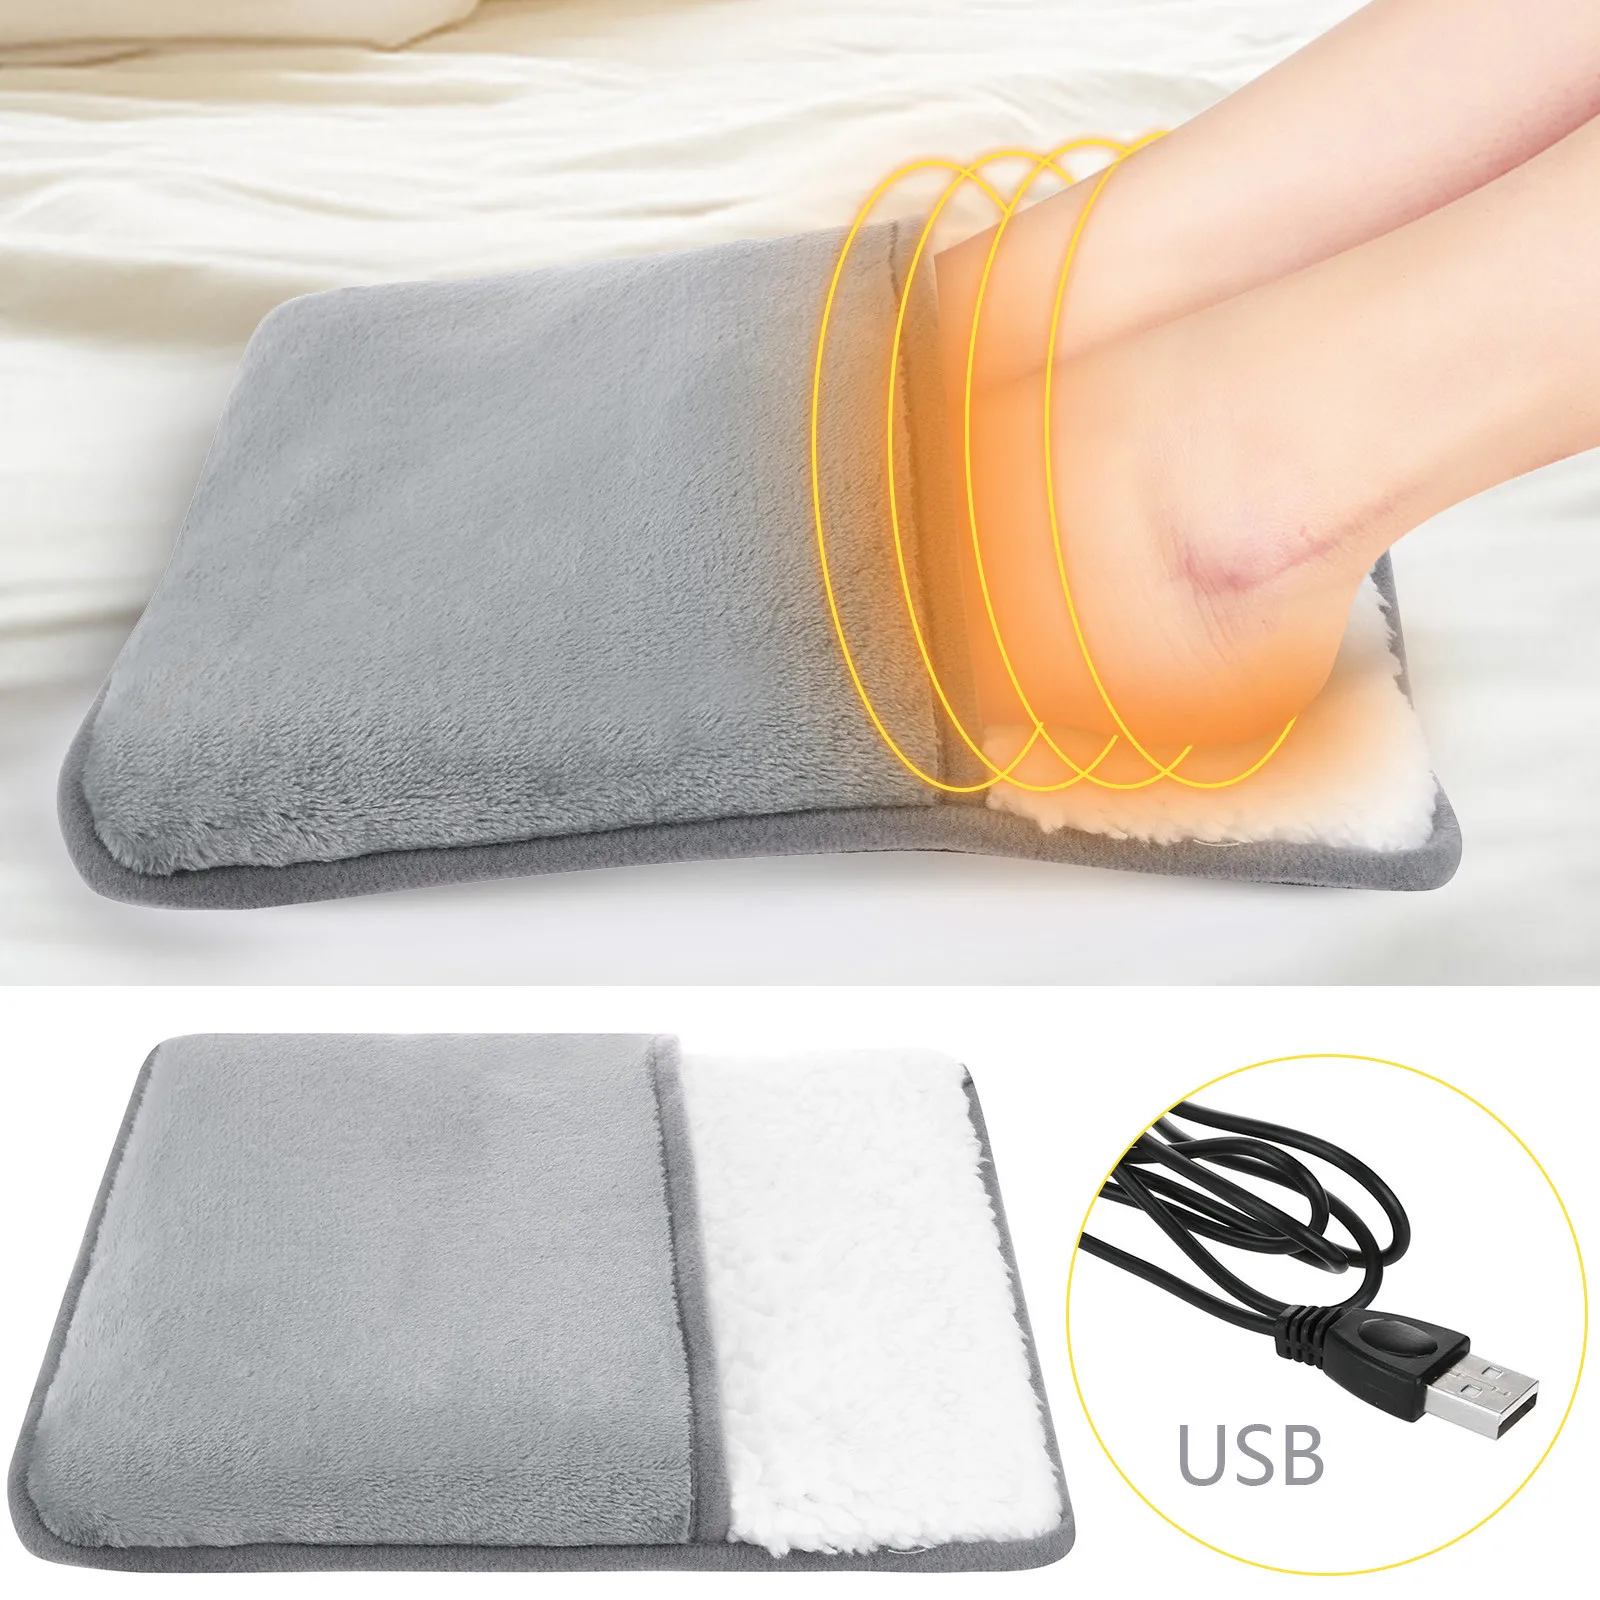 Almohadilla eléctrica USB para calentar los pies, calentador portátil de manos y pies, mantel térmico para invierno